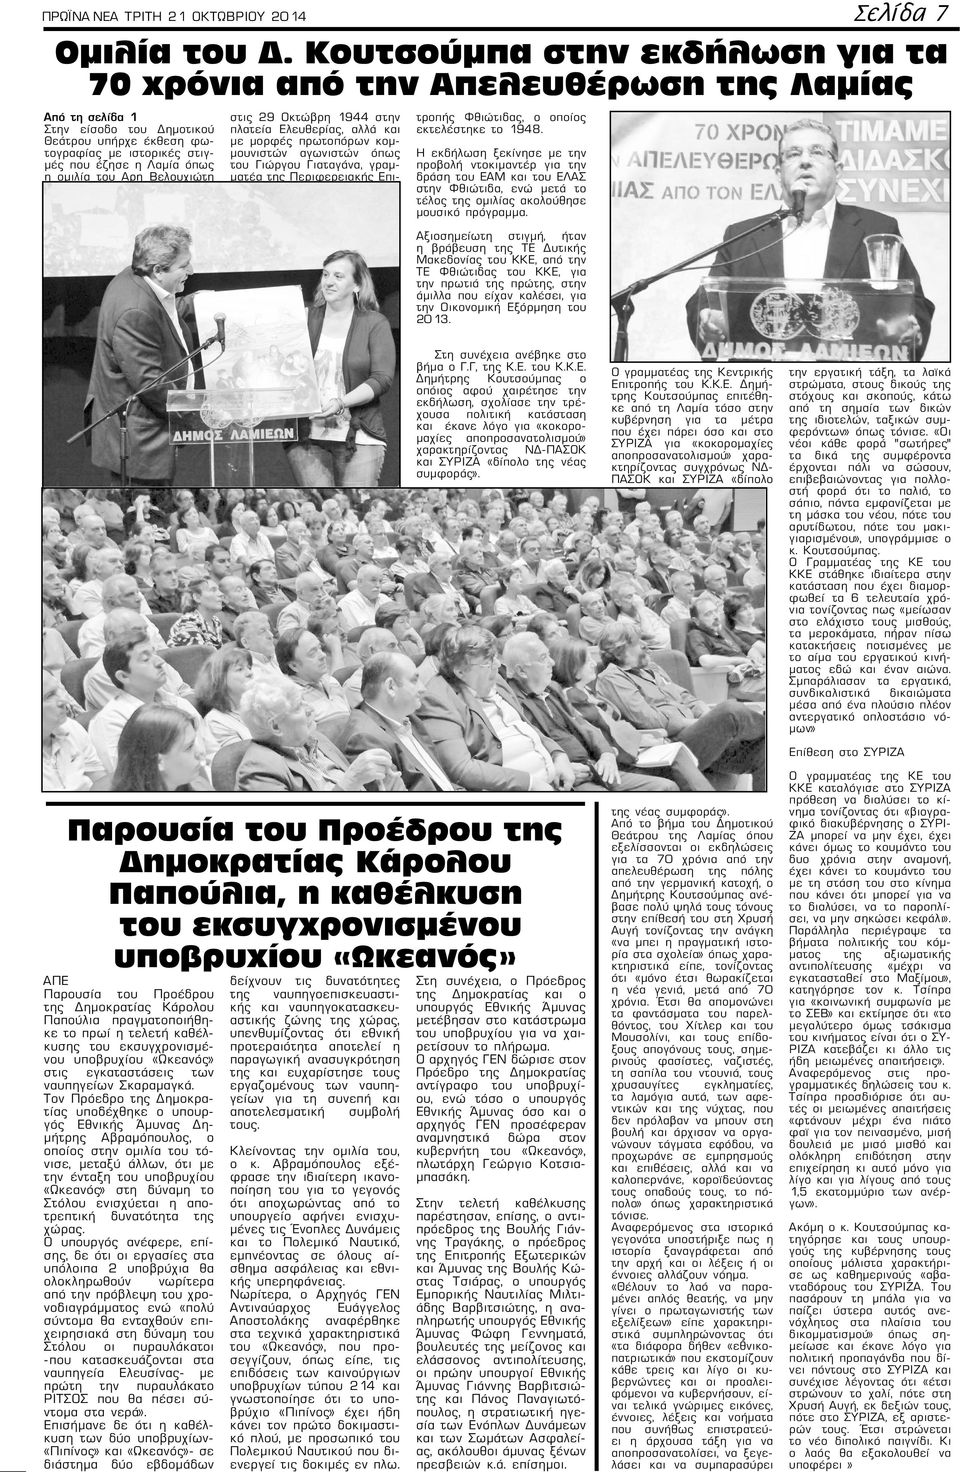 ομιλία του Αρη Βελουχιώτη στις 29 Οκτώβρη 1944 στην πλατεία Ελευθερίας, αλλά και με μορφές πρωτοπόρων κομμουνιστών αγωνιστών όπως του Γιώργου Γιαταγάνα, γραμματέα της Περιφερειακής Επιτροπής